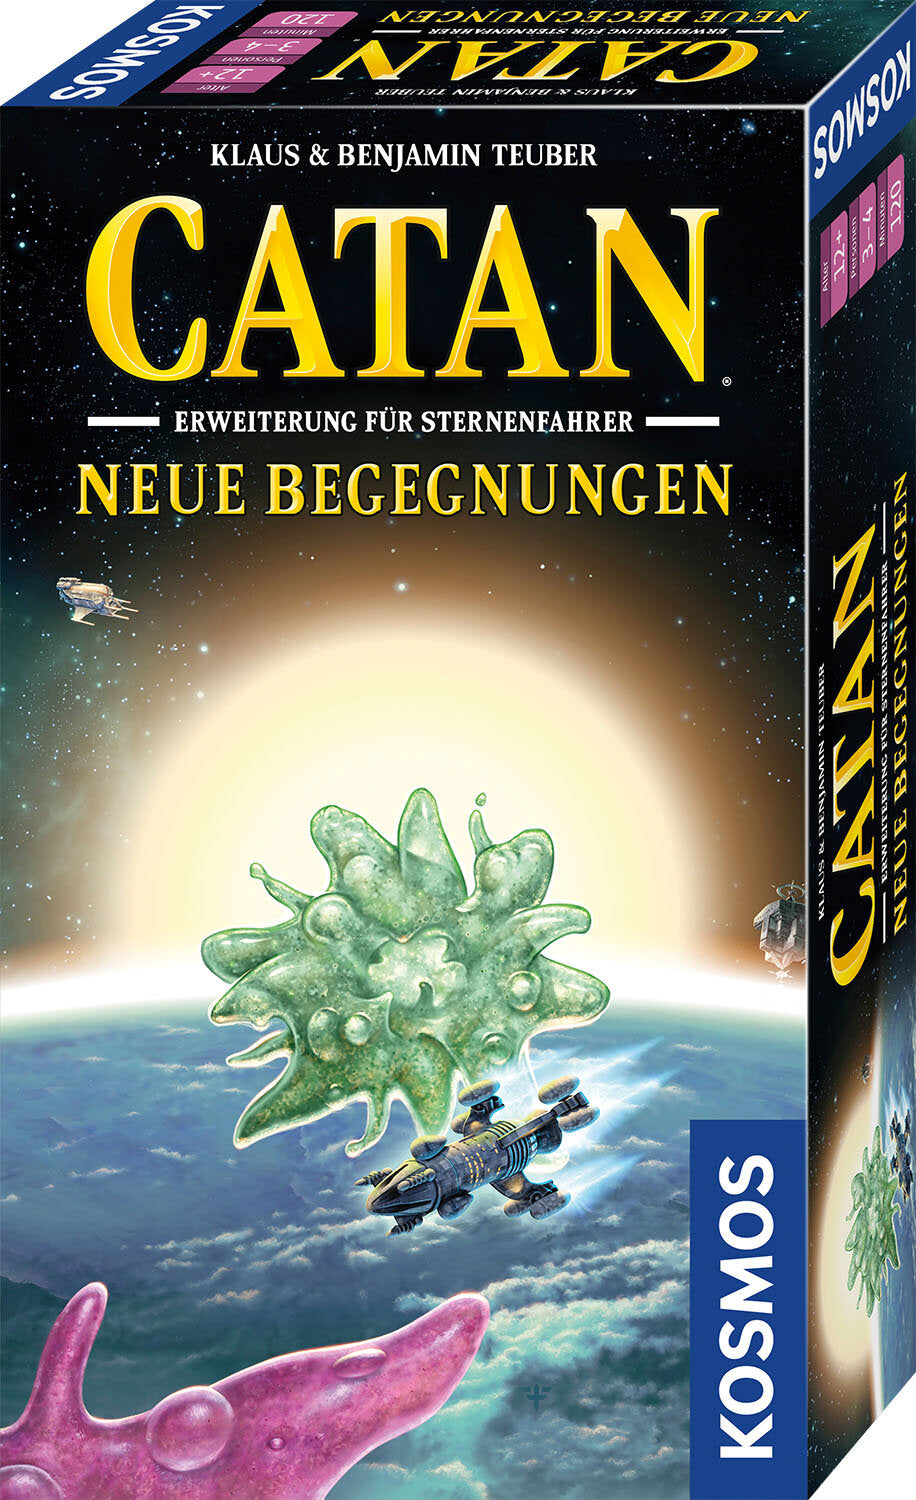 Catan - Sternenfahrer - Neue Begegnungen Erweiterung